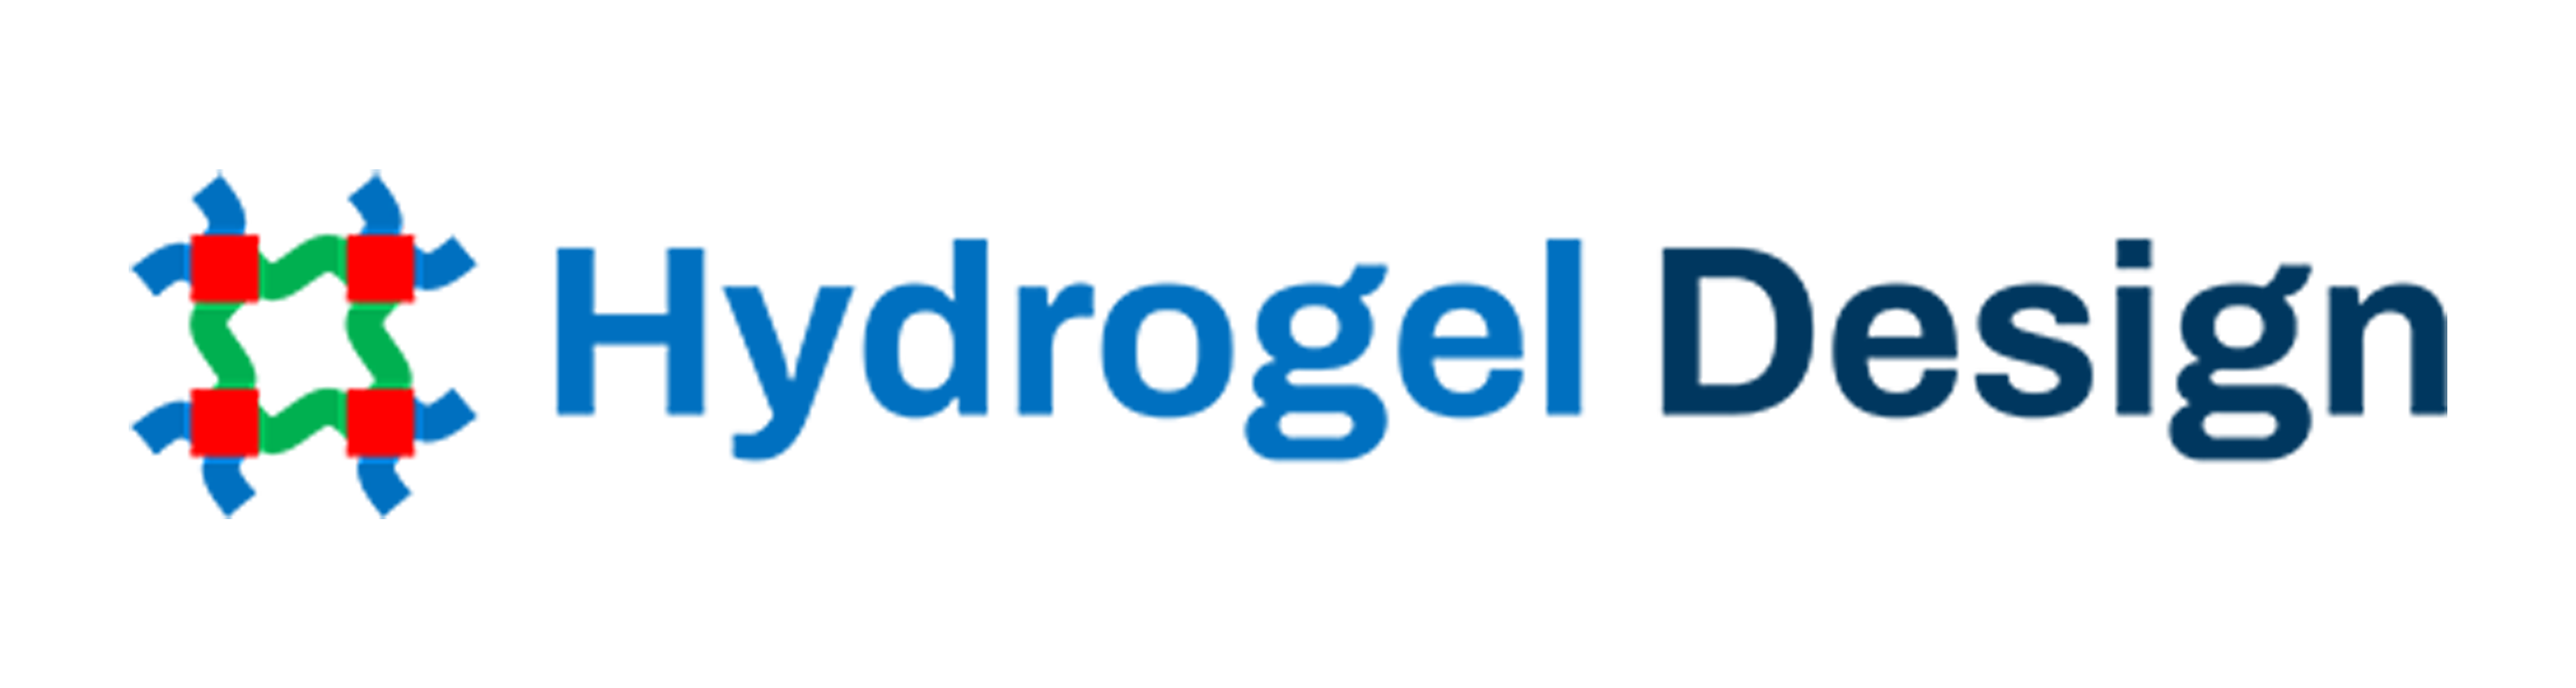 Hydrogel Design